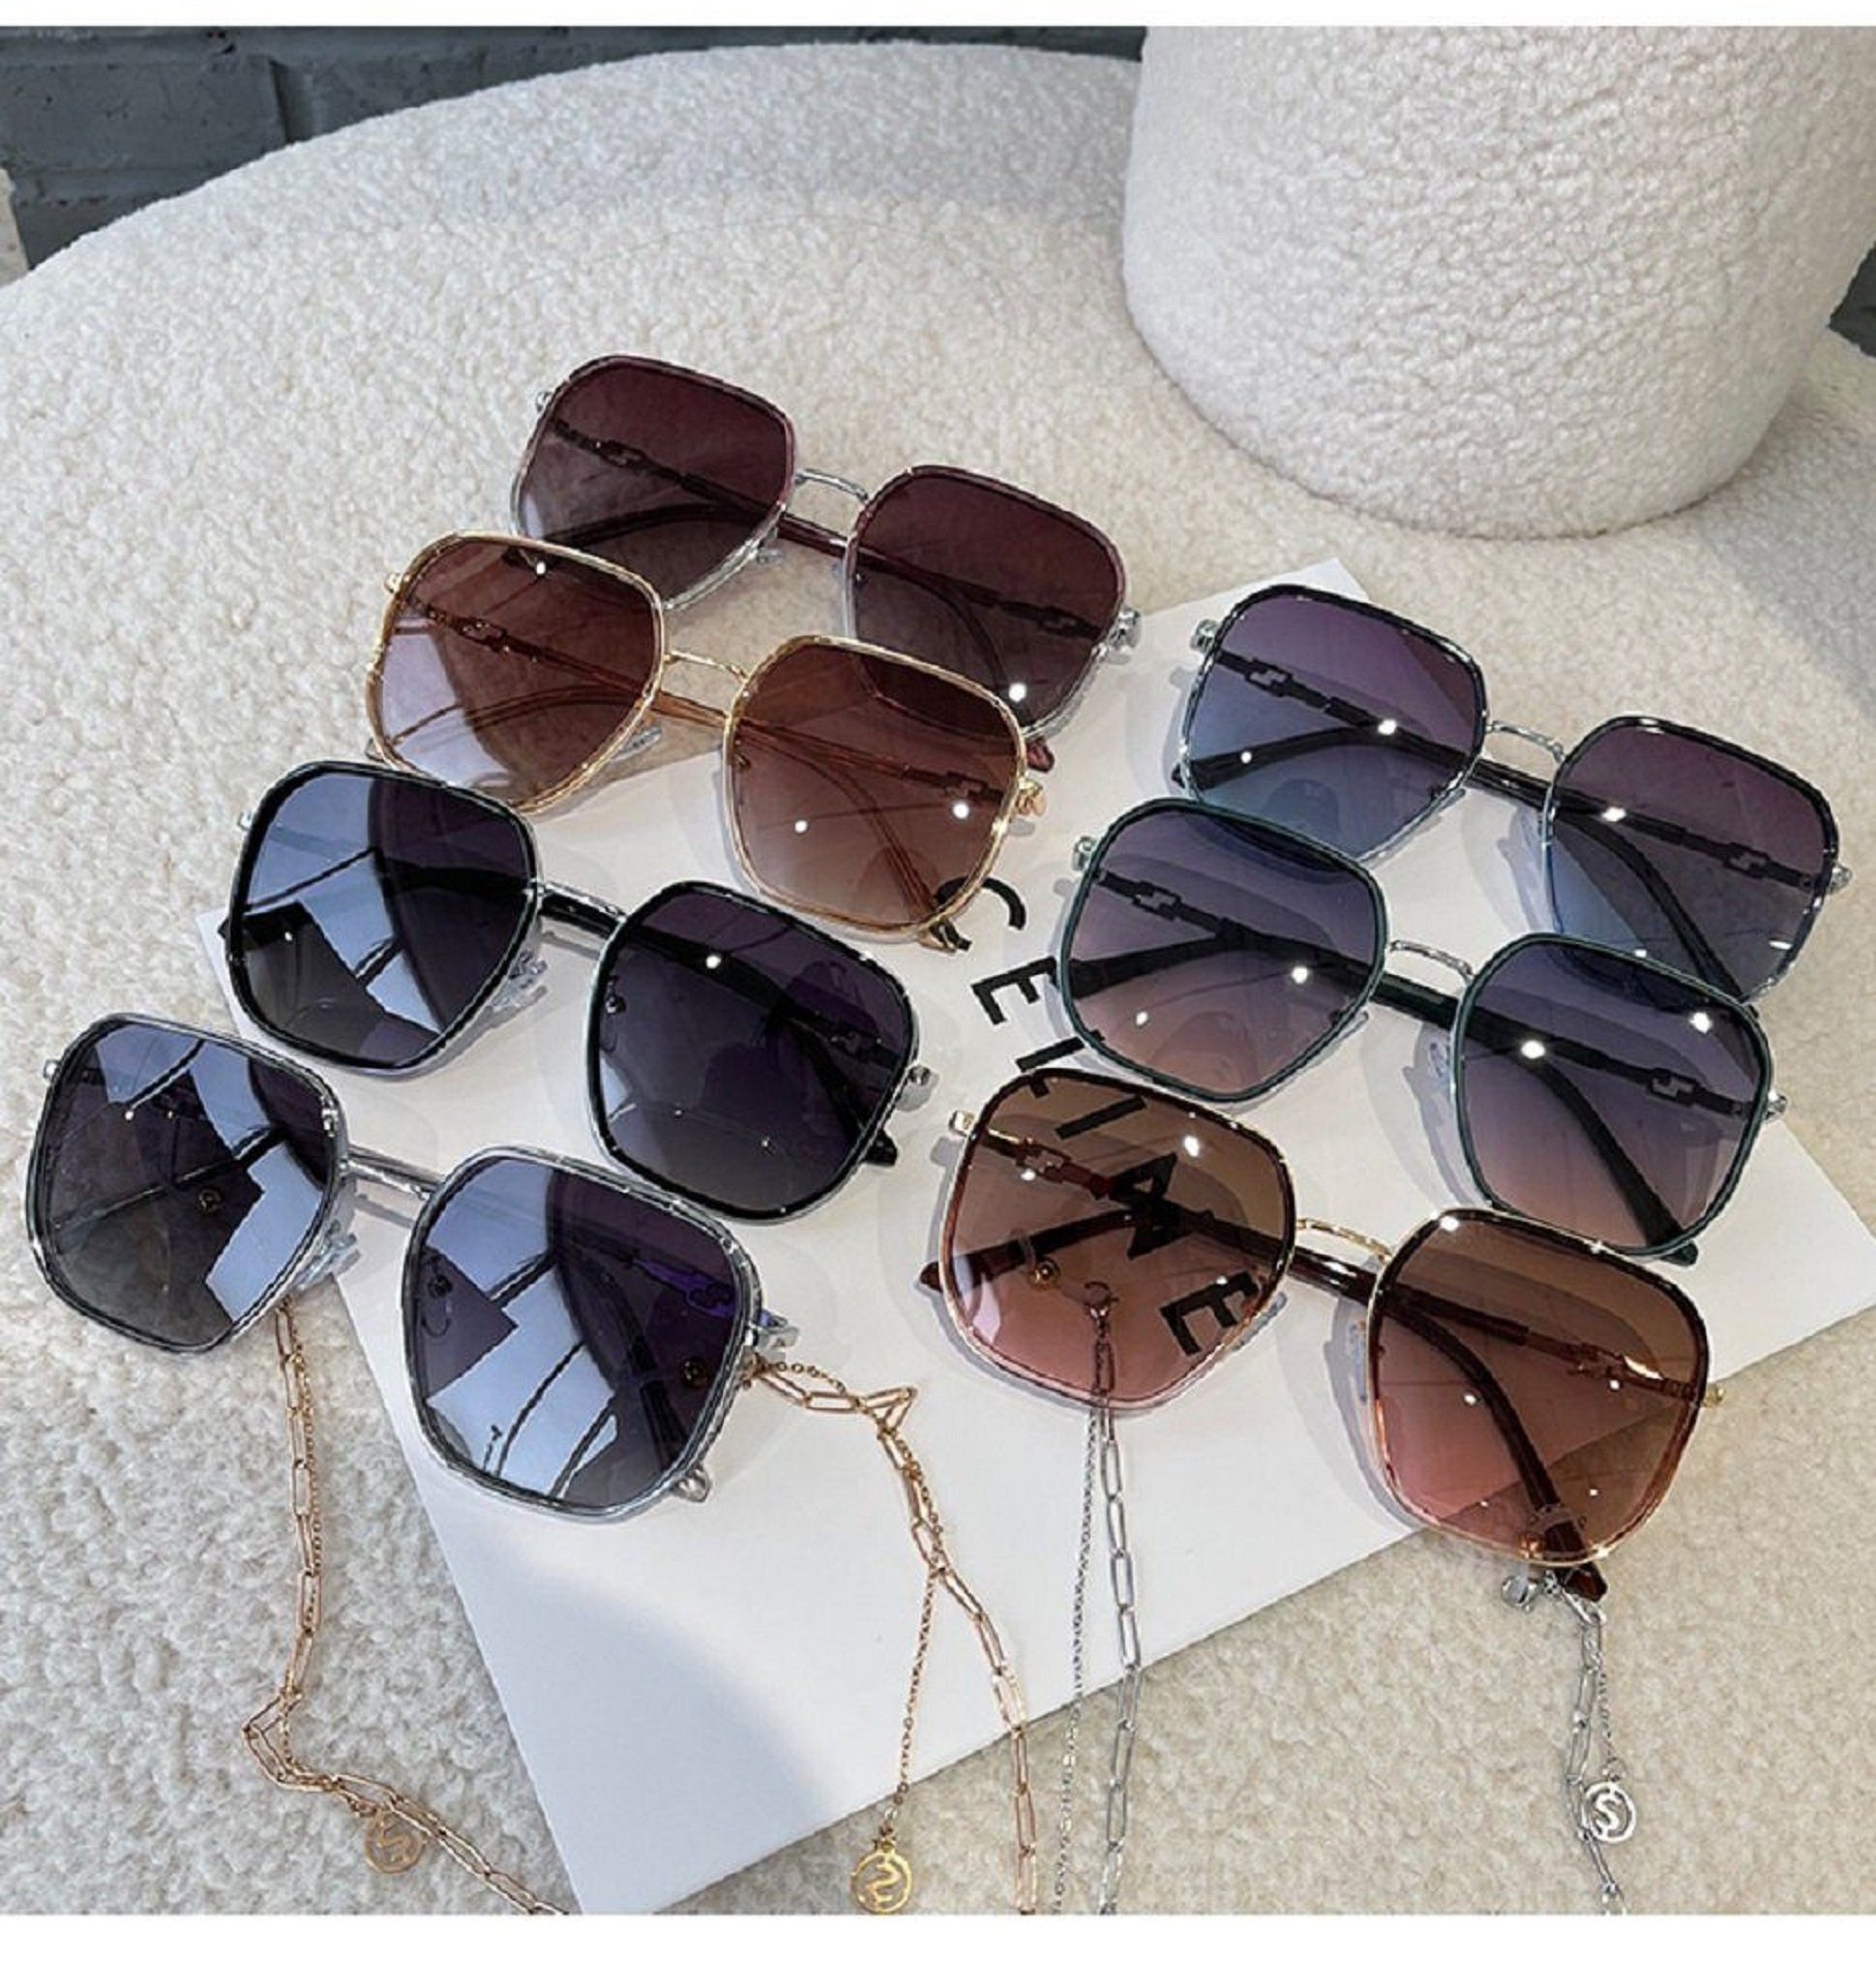 Mutoy Sonnenbrille Sonnenbrille,Sonnenbrille Damen,sonnenbrille damen mit , braun (Frauen Fashion Sonnenbrille Schutz) polarisiert damen, sonnenbrille vintage UV400